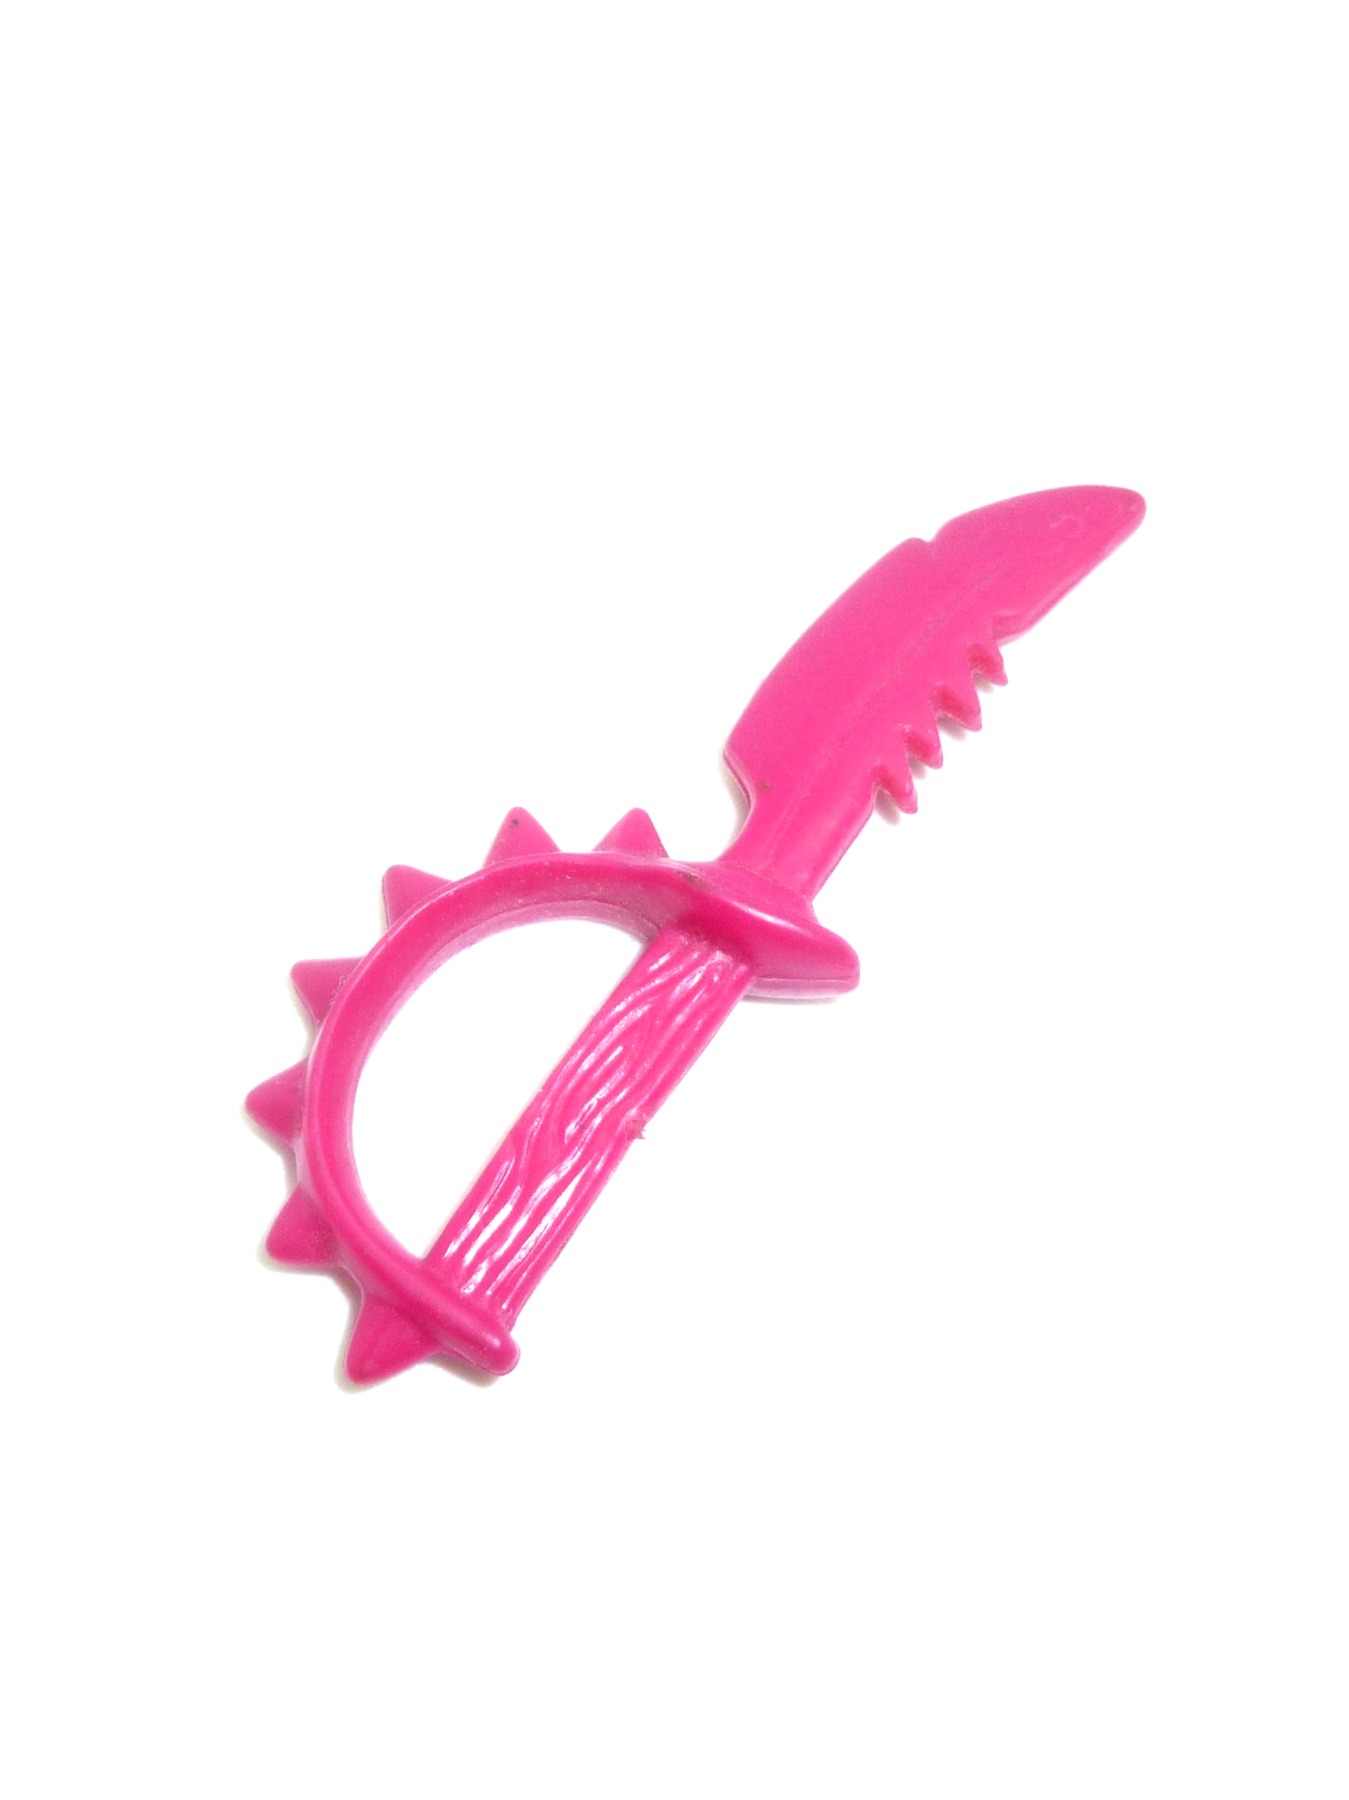 Slash knife / weapon 1990 Playmates